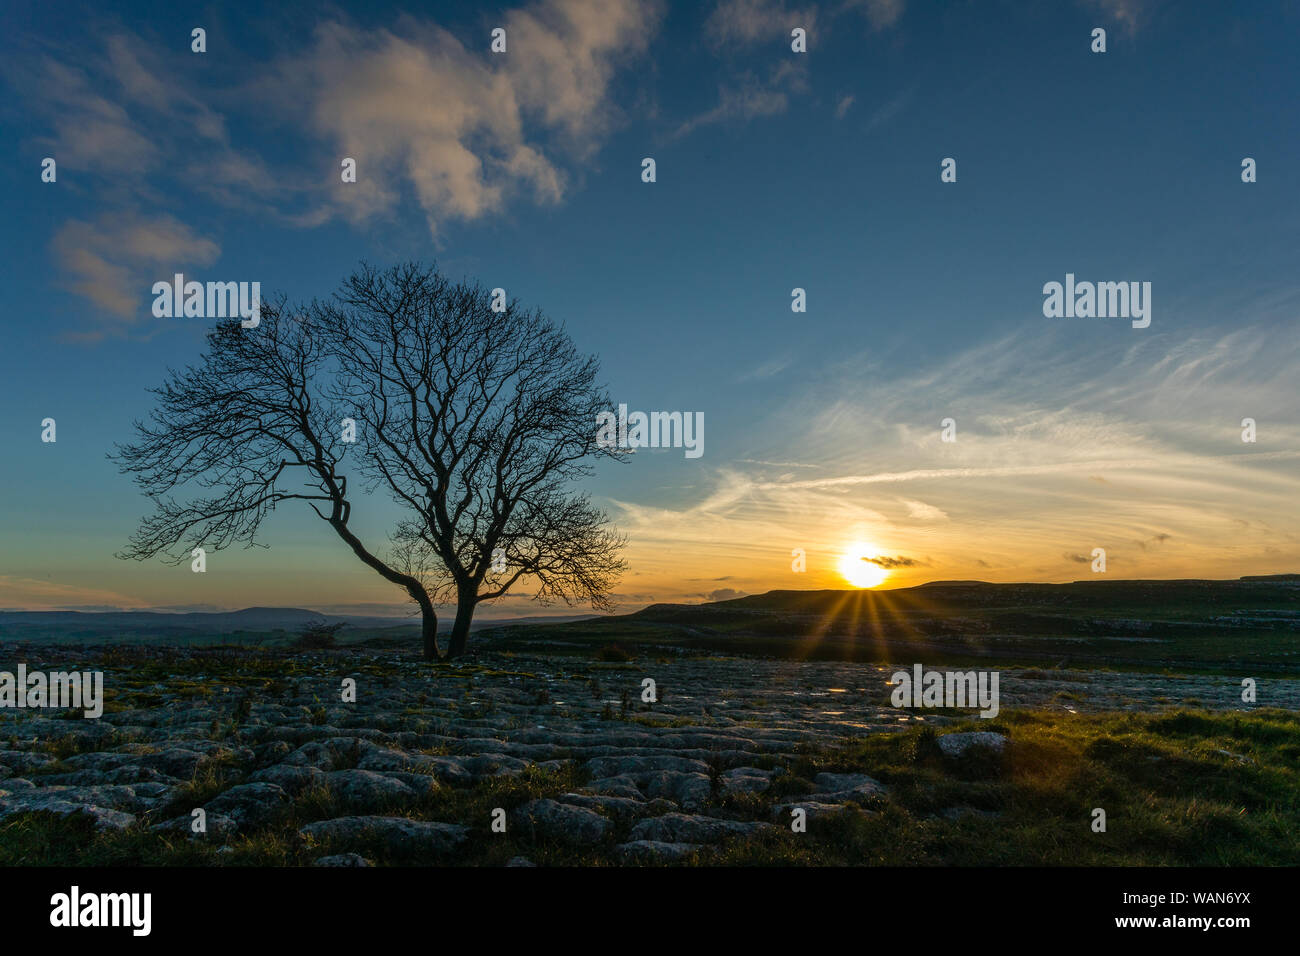 Le soleil se couche pendant l'heure bleue au seul arbre isolé à Malham Cove dans le Lapiez, dans le Yorkshire, apparaissant à défier les forces de la nature. Banque D'Images